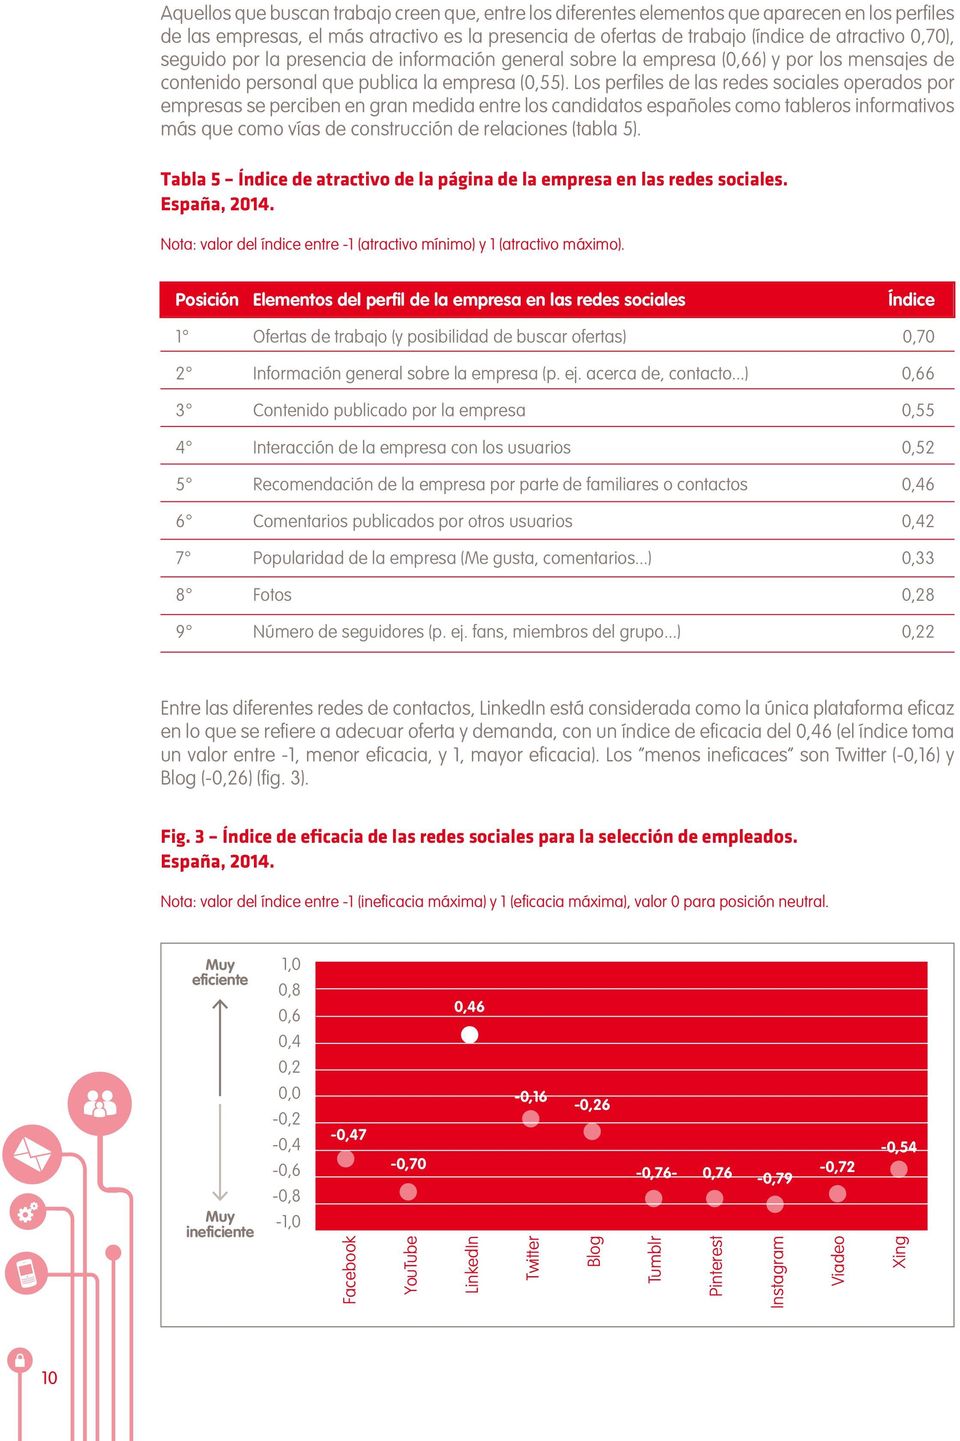 Los perfiles de las redes sociales operados por empresas se perciben en gran medida entre los candidatos españoles como tableros informativos más que como vías de construcción de relaciones (tabla 5).